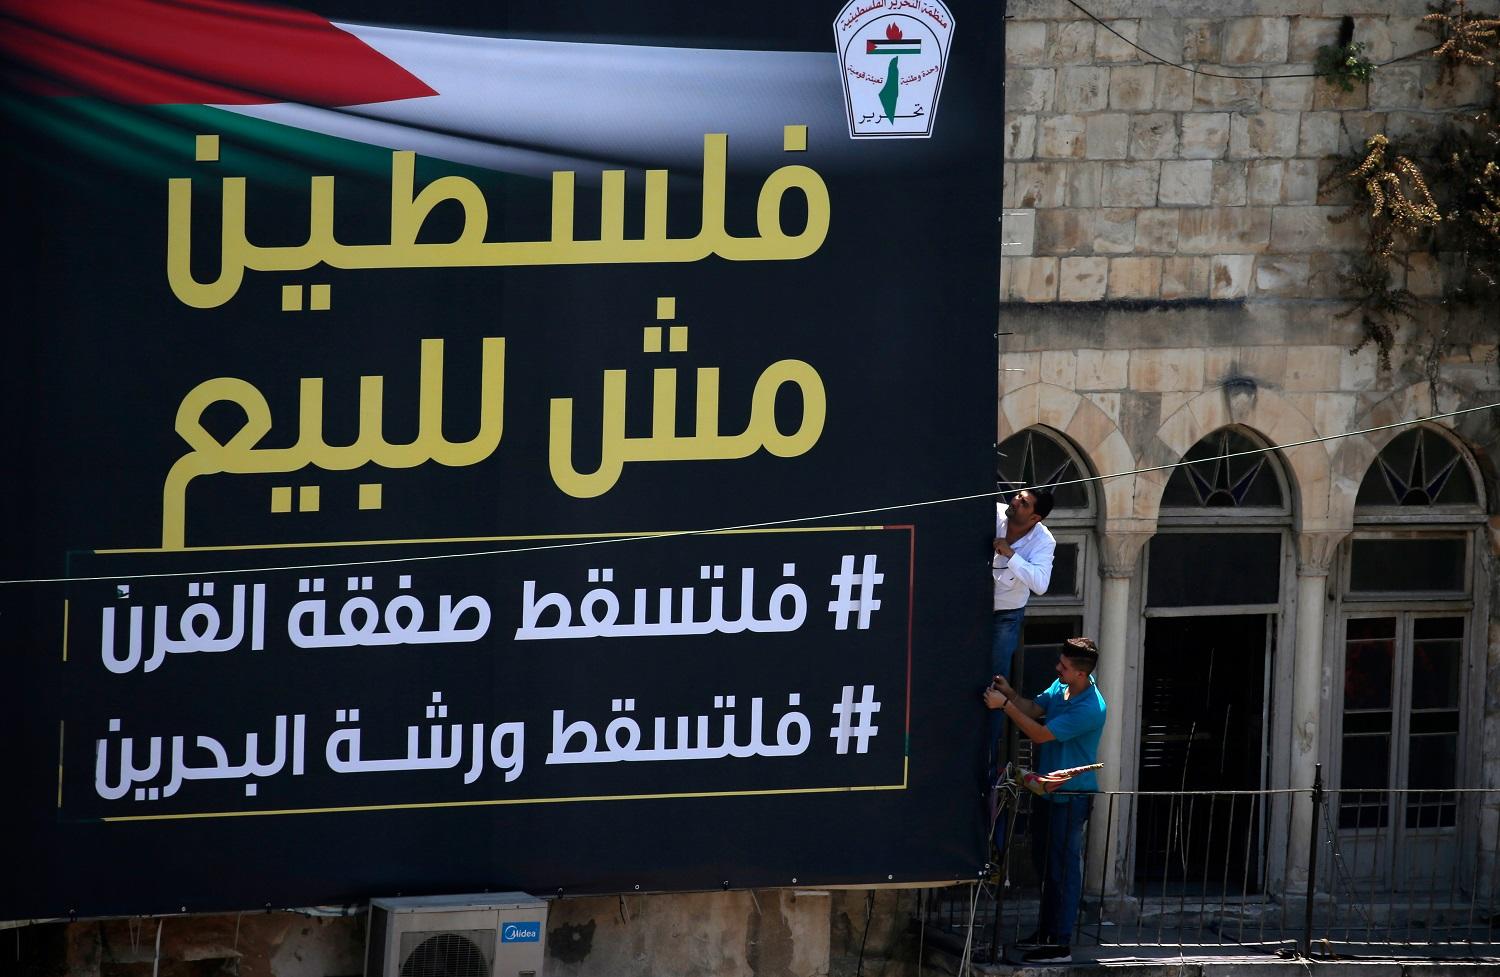 فلسطينيون يثبتون لافتة كتب عليها "فلسطين ليست للبيع" ، في الساحة الرئيسية لمدينة نابلس بالضفة الغربية. 24 يونيو 2019. أ ف ب